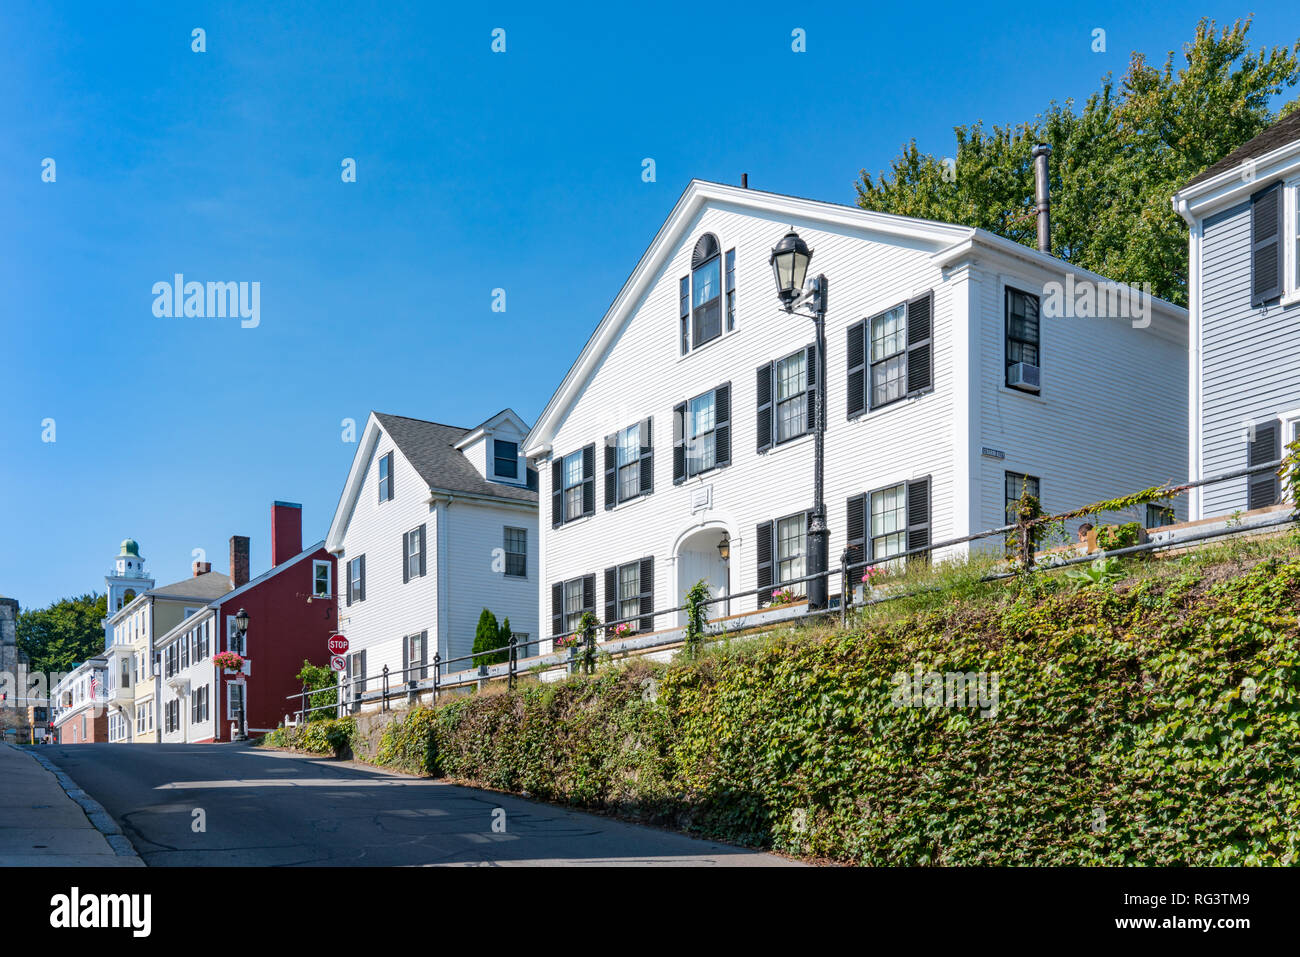 Maisons historiques le long de la rue Leyden à Plymouth, Massachusetts Banque D'Images